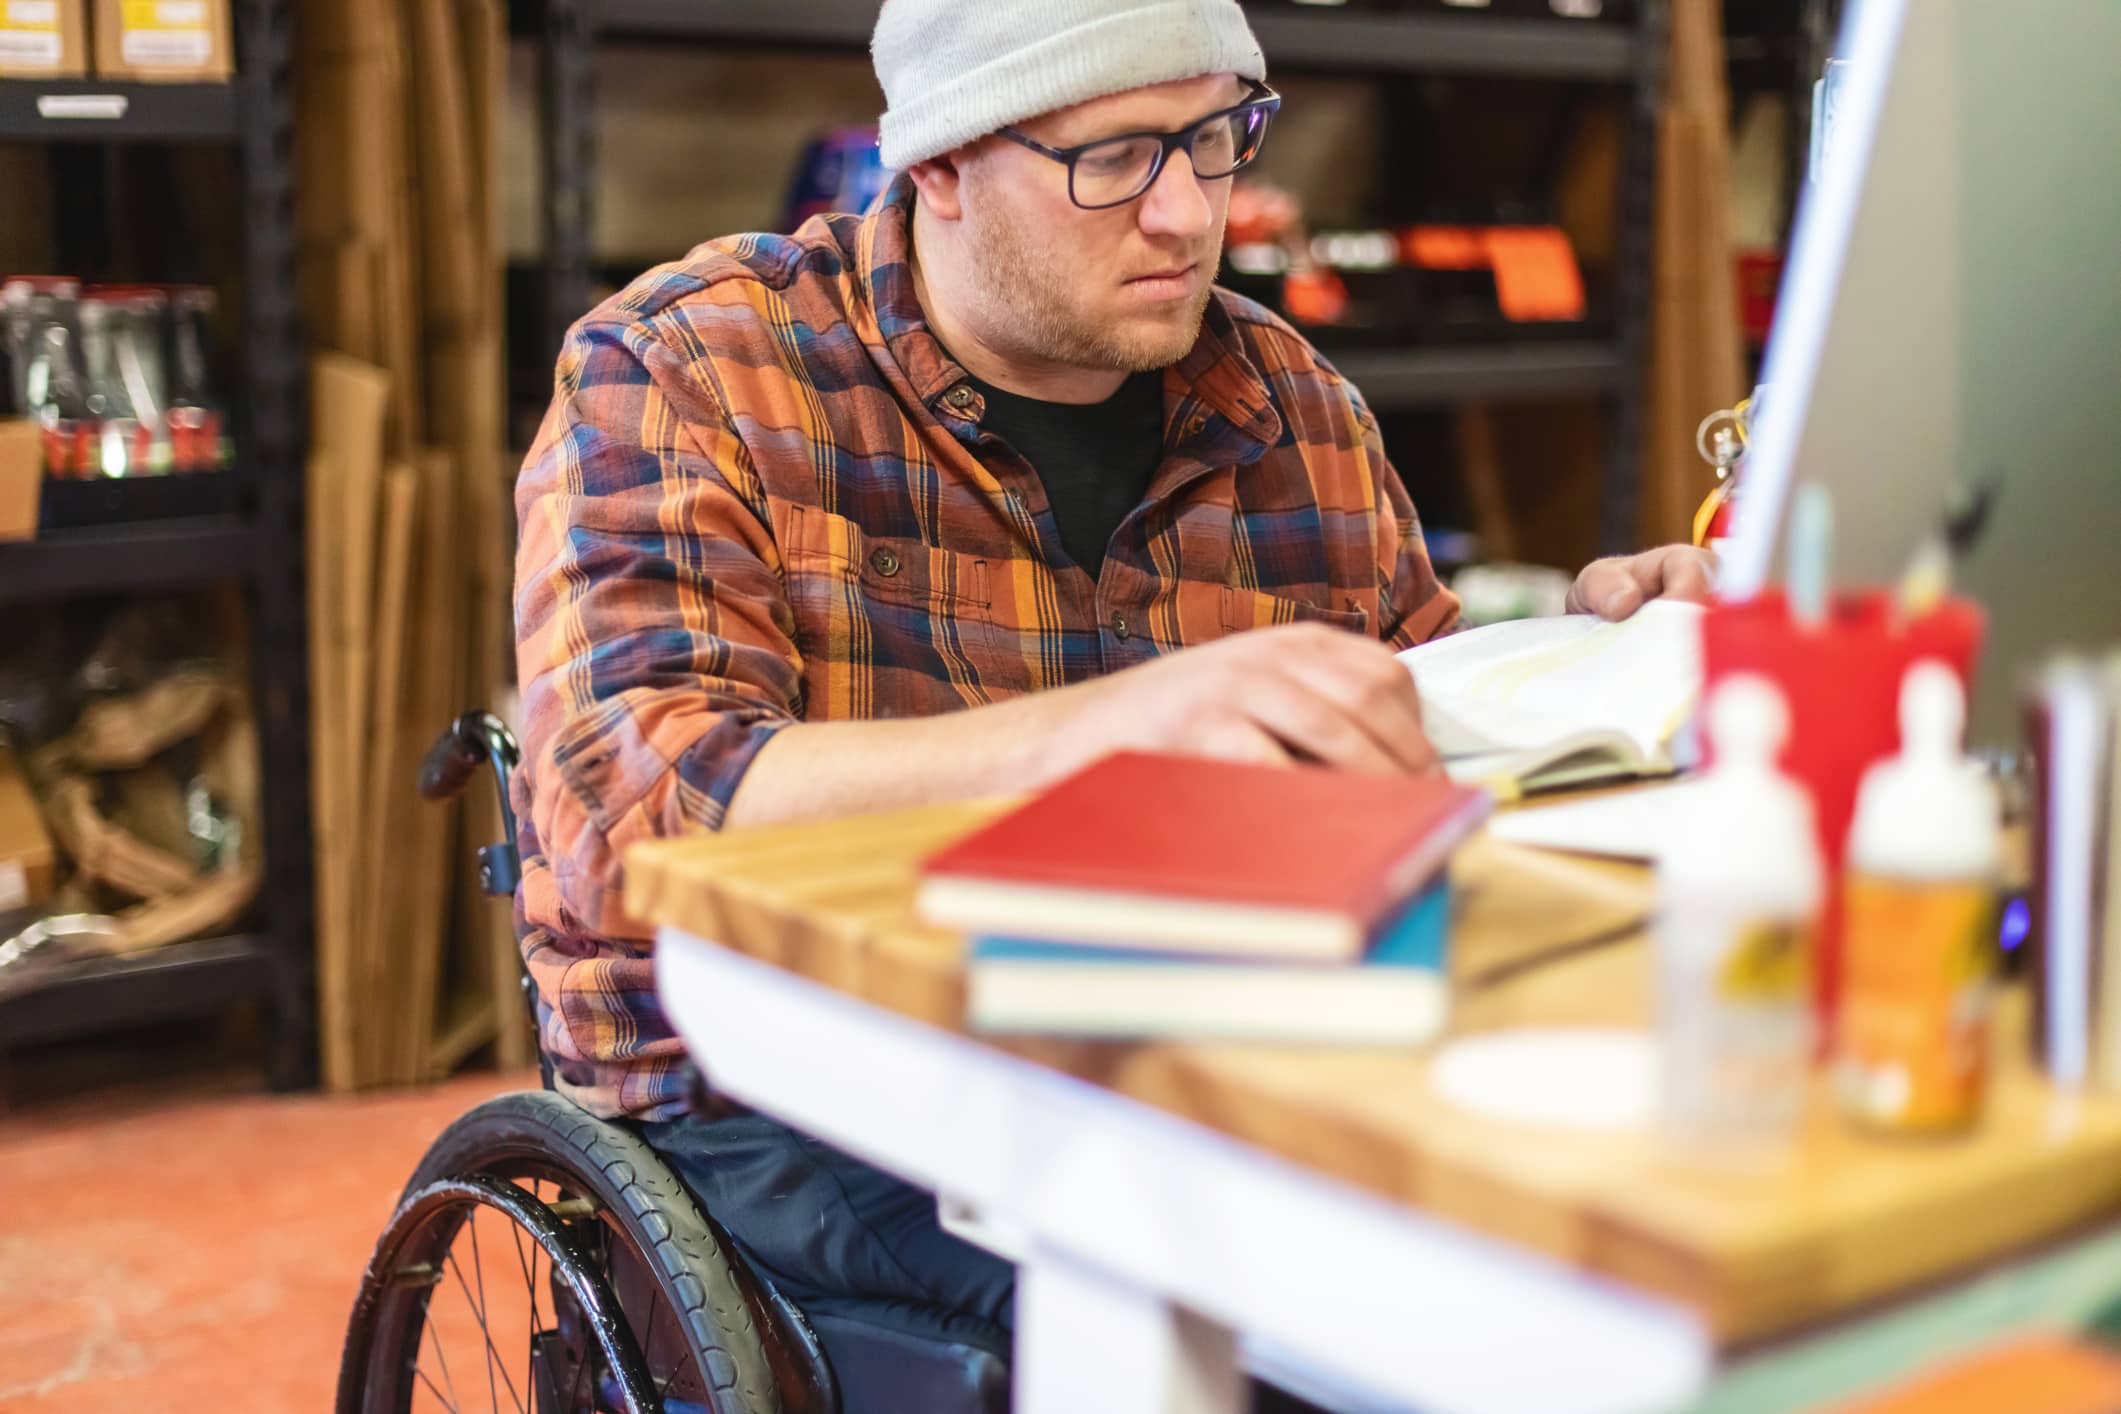 Caucasian man in a wheelchair reading a book